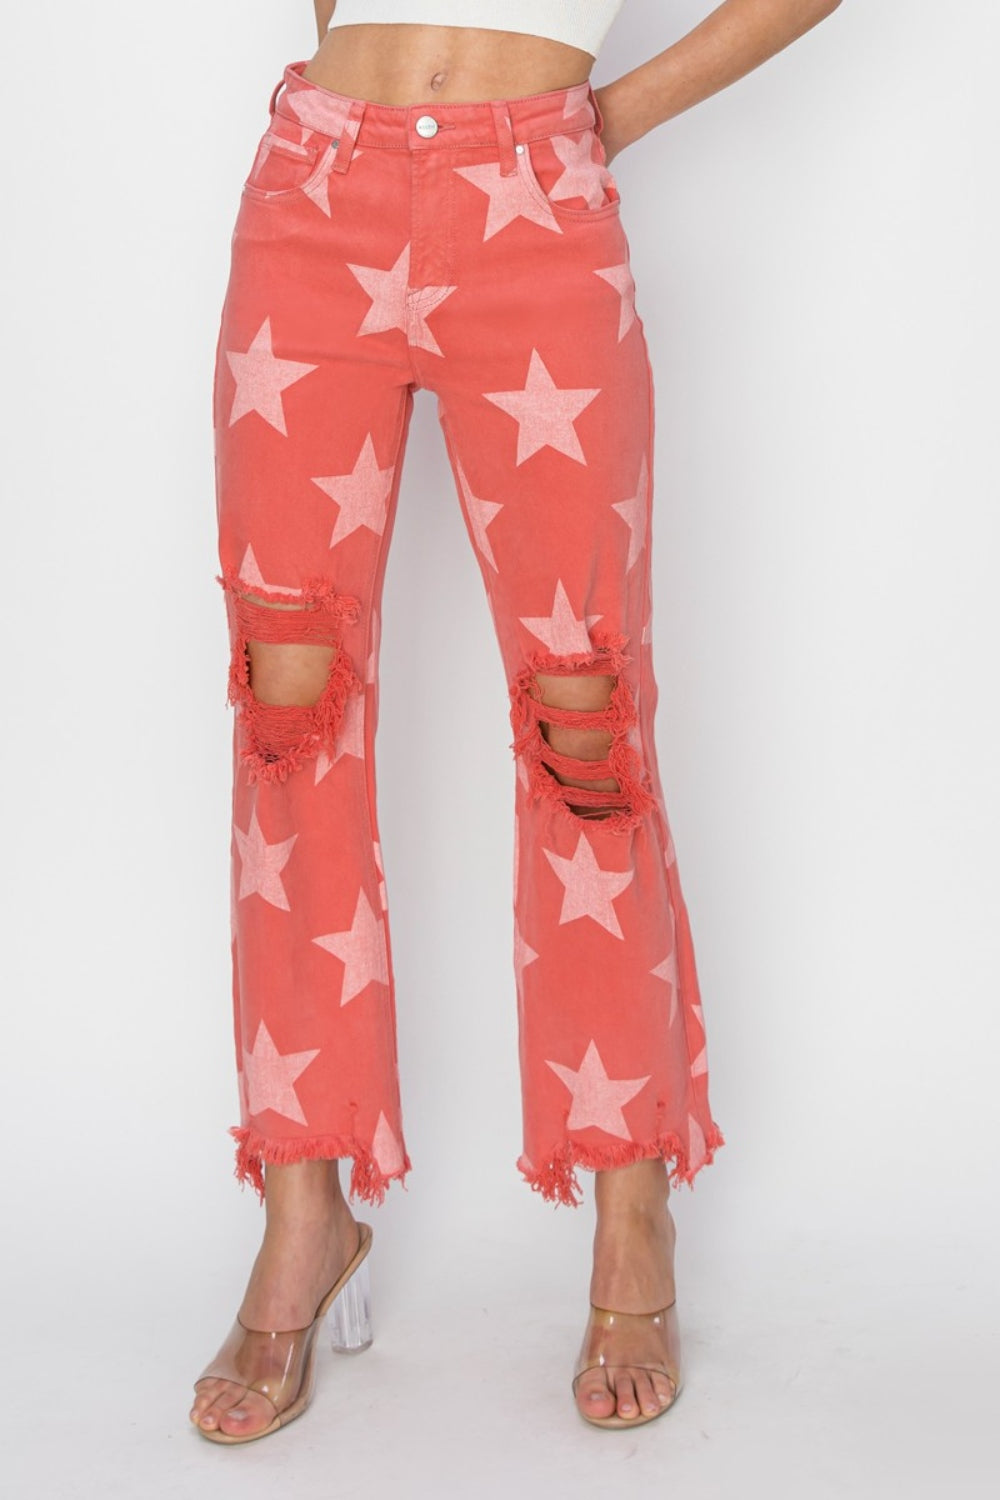 TEEK - Peach Blossom Distressed Raw Hem Star Pattern Jeans JEANS TEEK Trend 0  